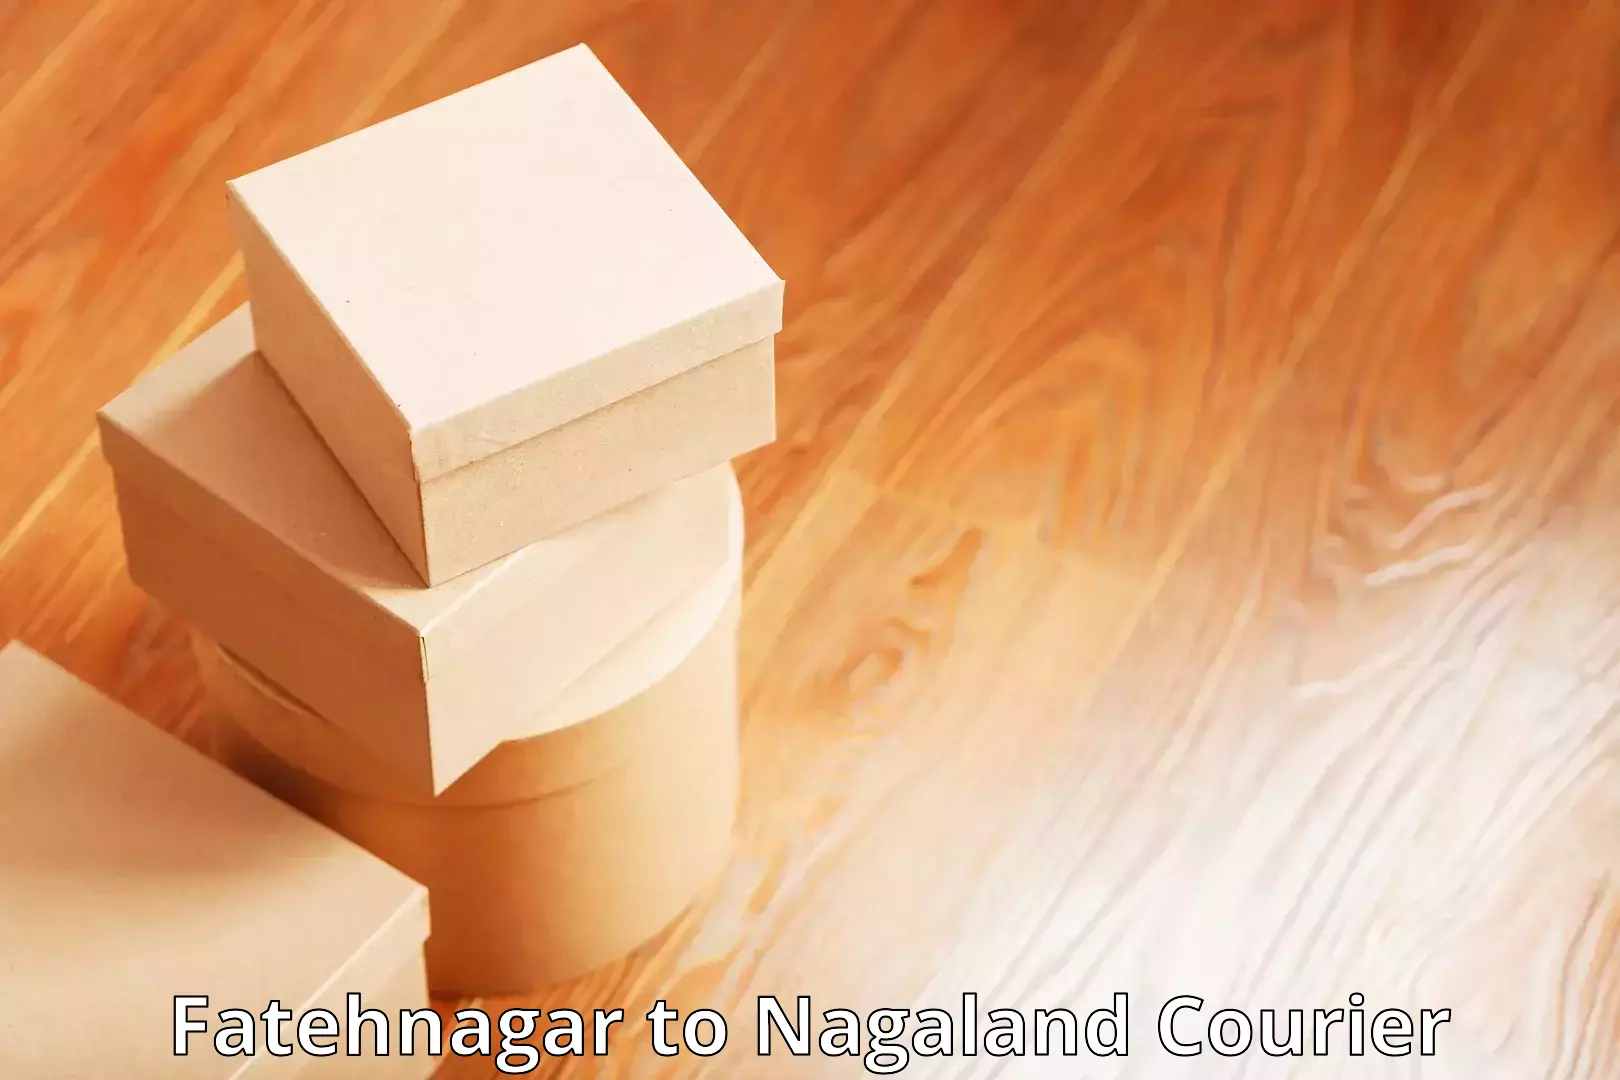 Quality courier services Fatehnagar to Nagaland